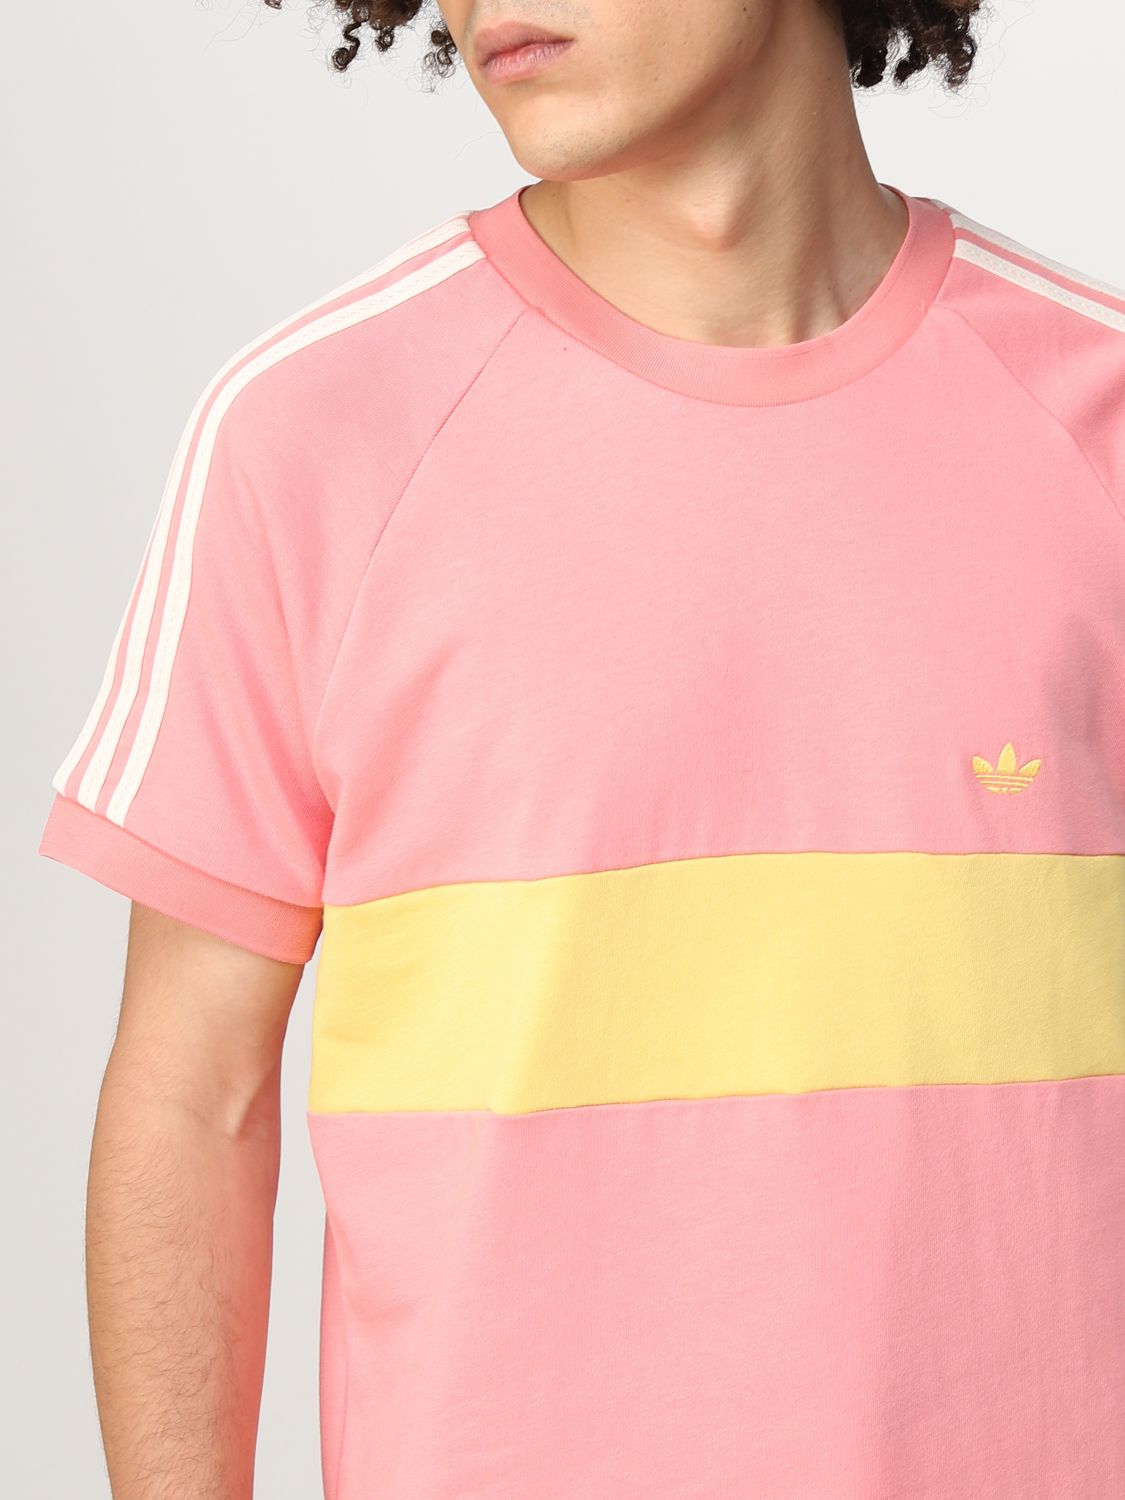 ADIDAS ORIGINALS: Camiseta para hombre, Rosa Camiseta Adidas HL8746 en línea en